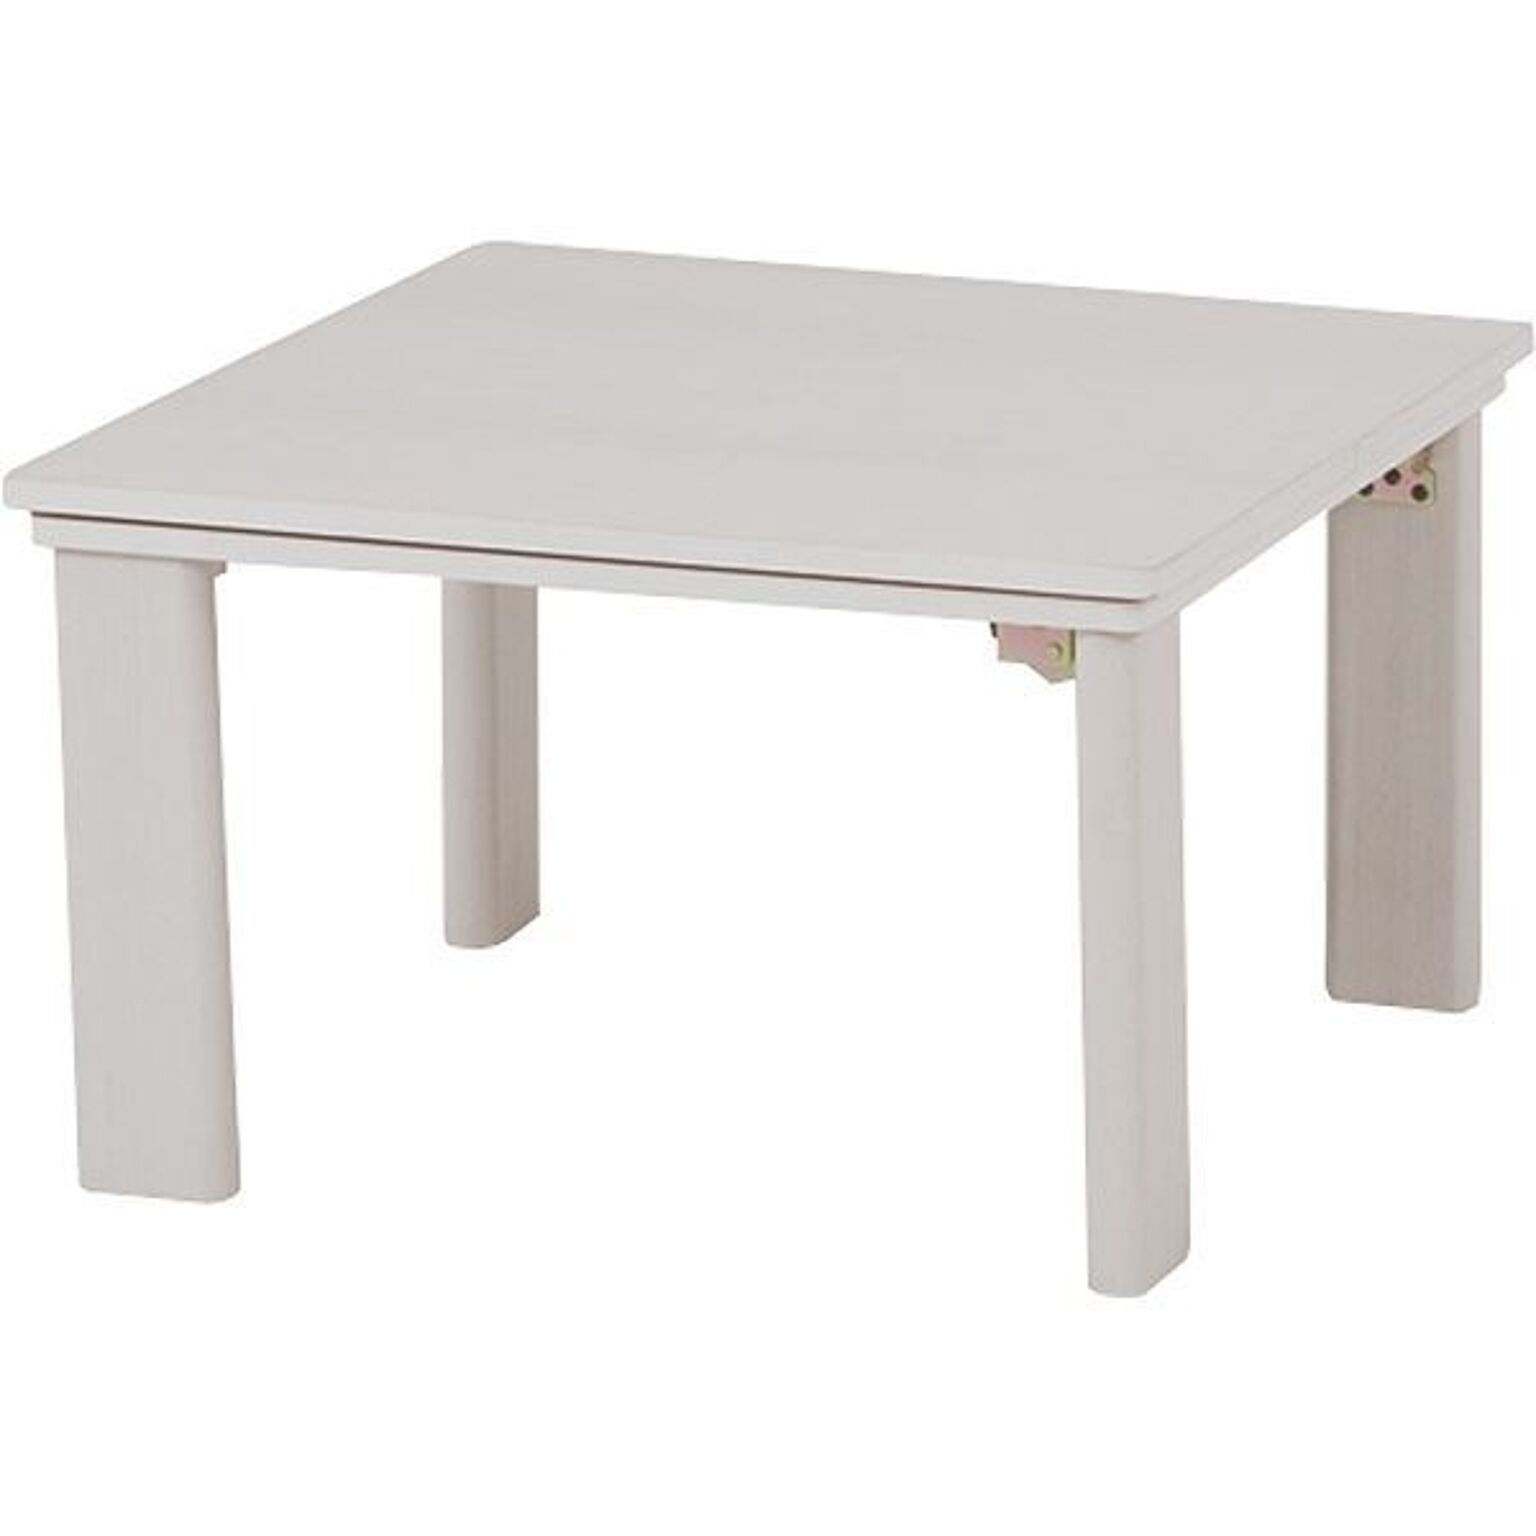 萩原 折れ脚こたつテーブル 正方形 幅60cm リバーシブル天板 オール